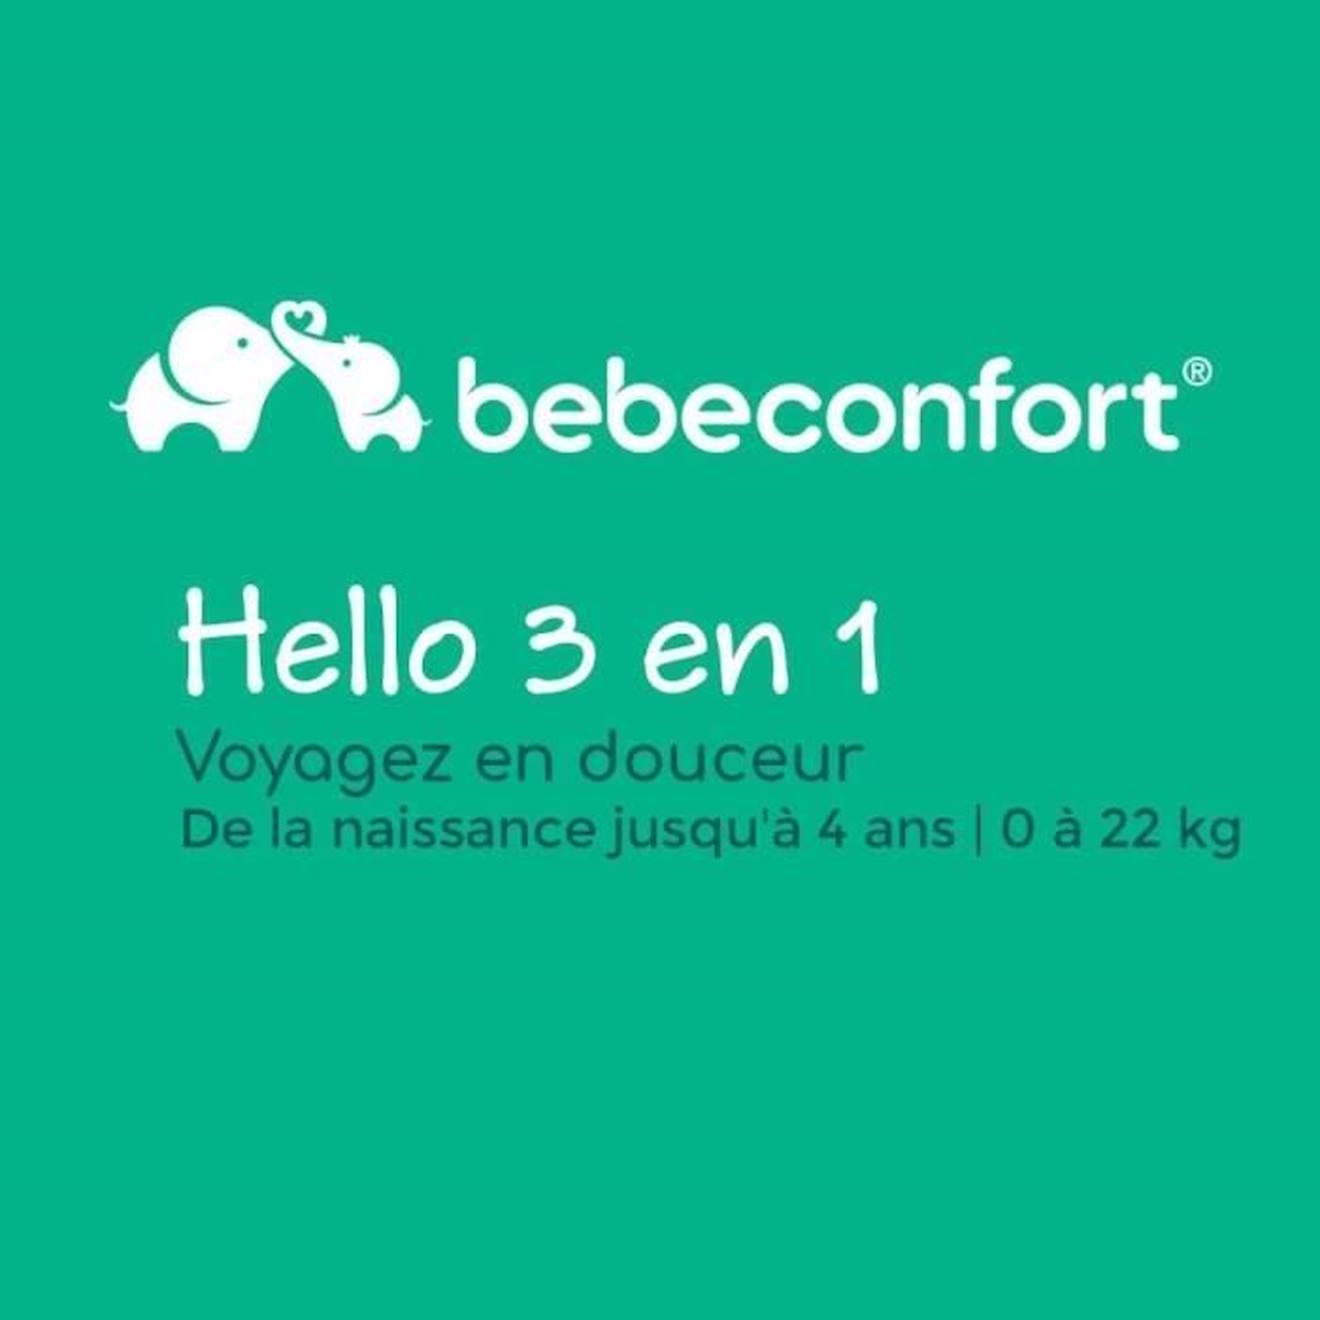 BEBECONFORT Poussette 3 en 1 Hello, avec nacelle intégrée + Siège auto Gr0  Cosi, 4 roues, Black Chic, naissance à 22kg (0-3 ans) noir - Bébé Confort